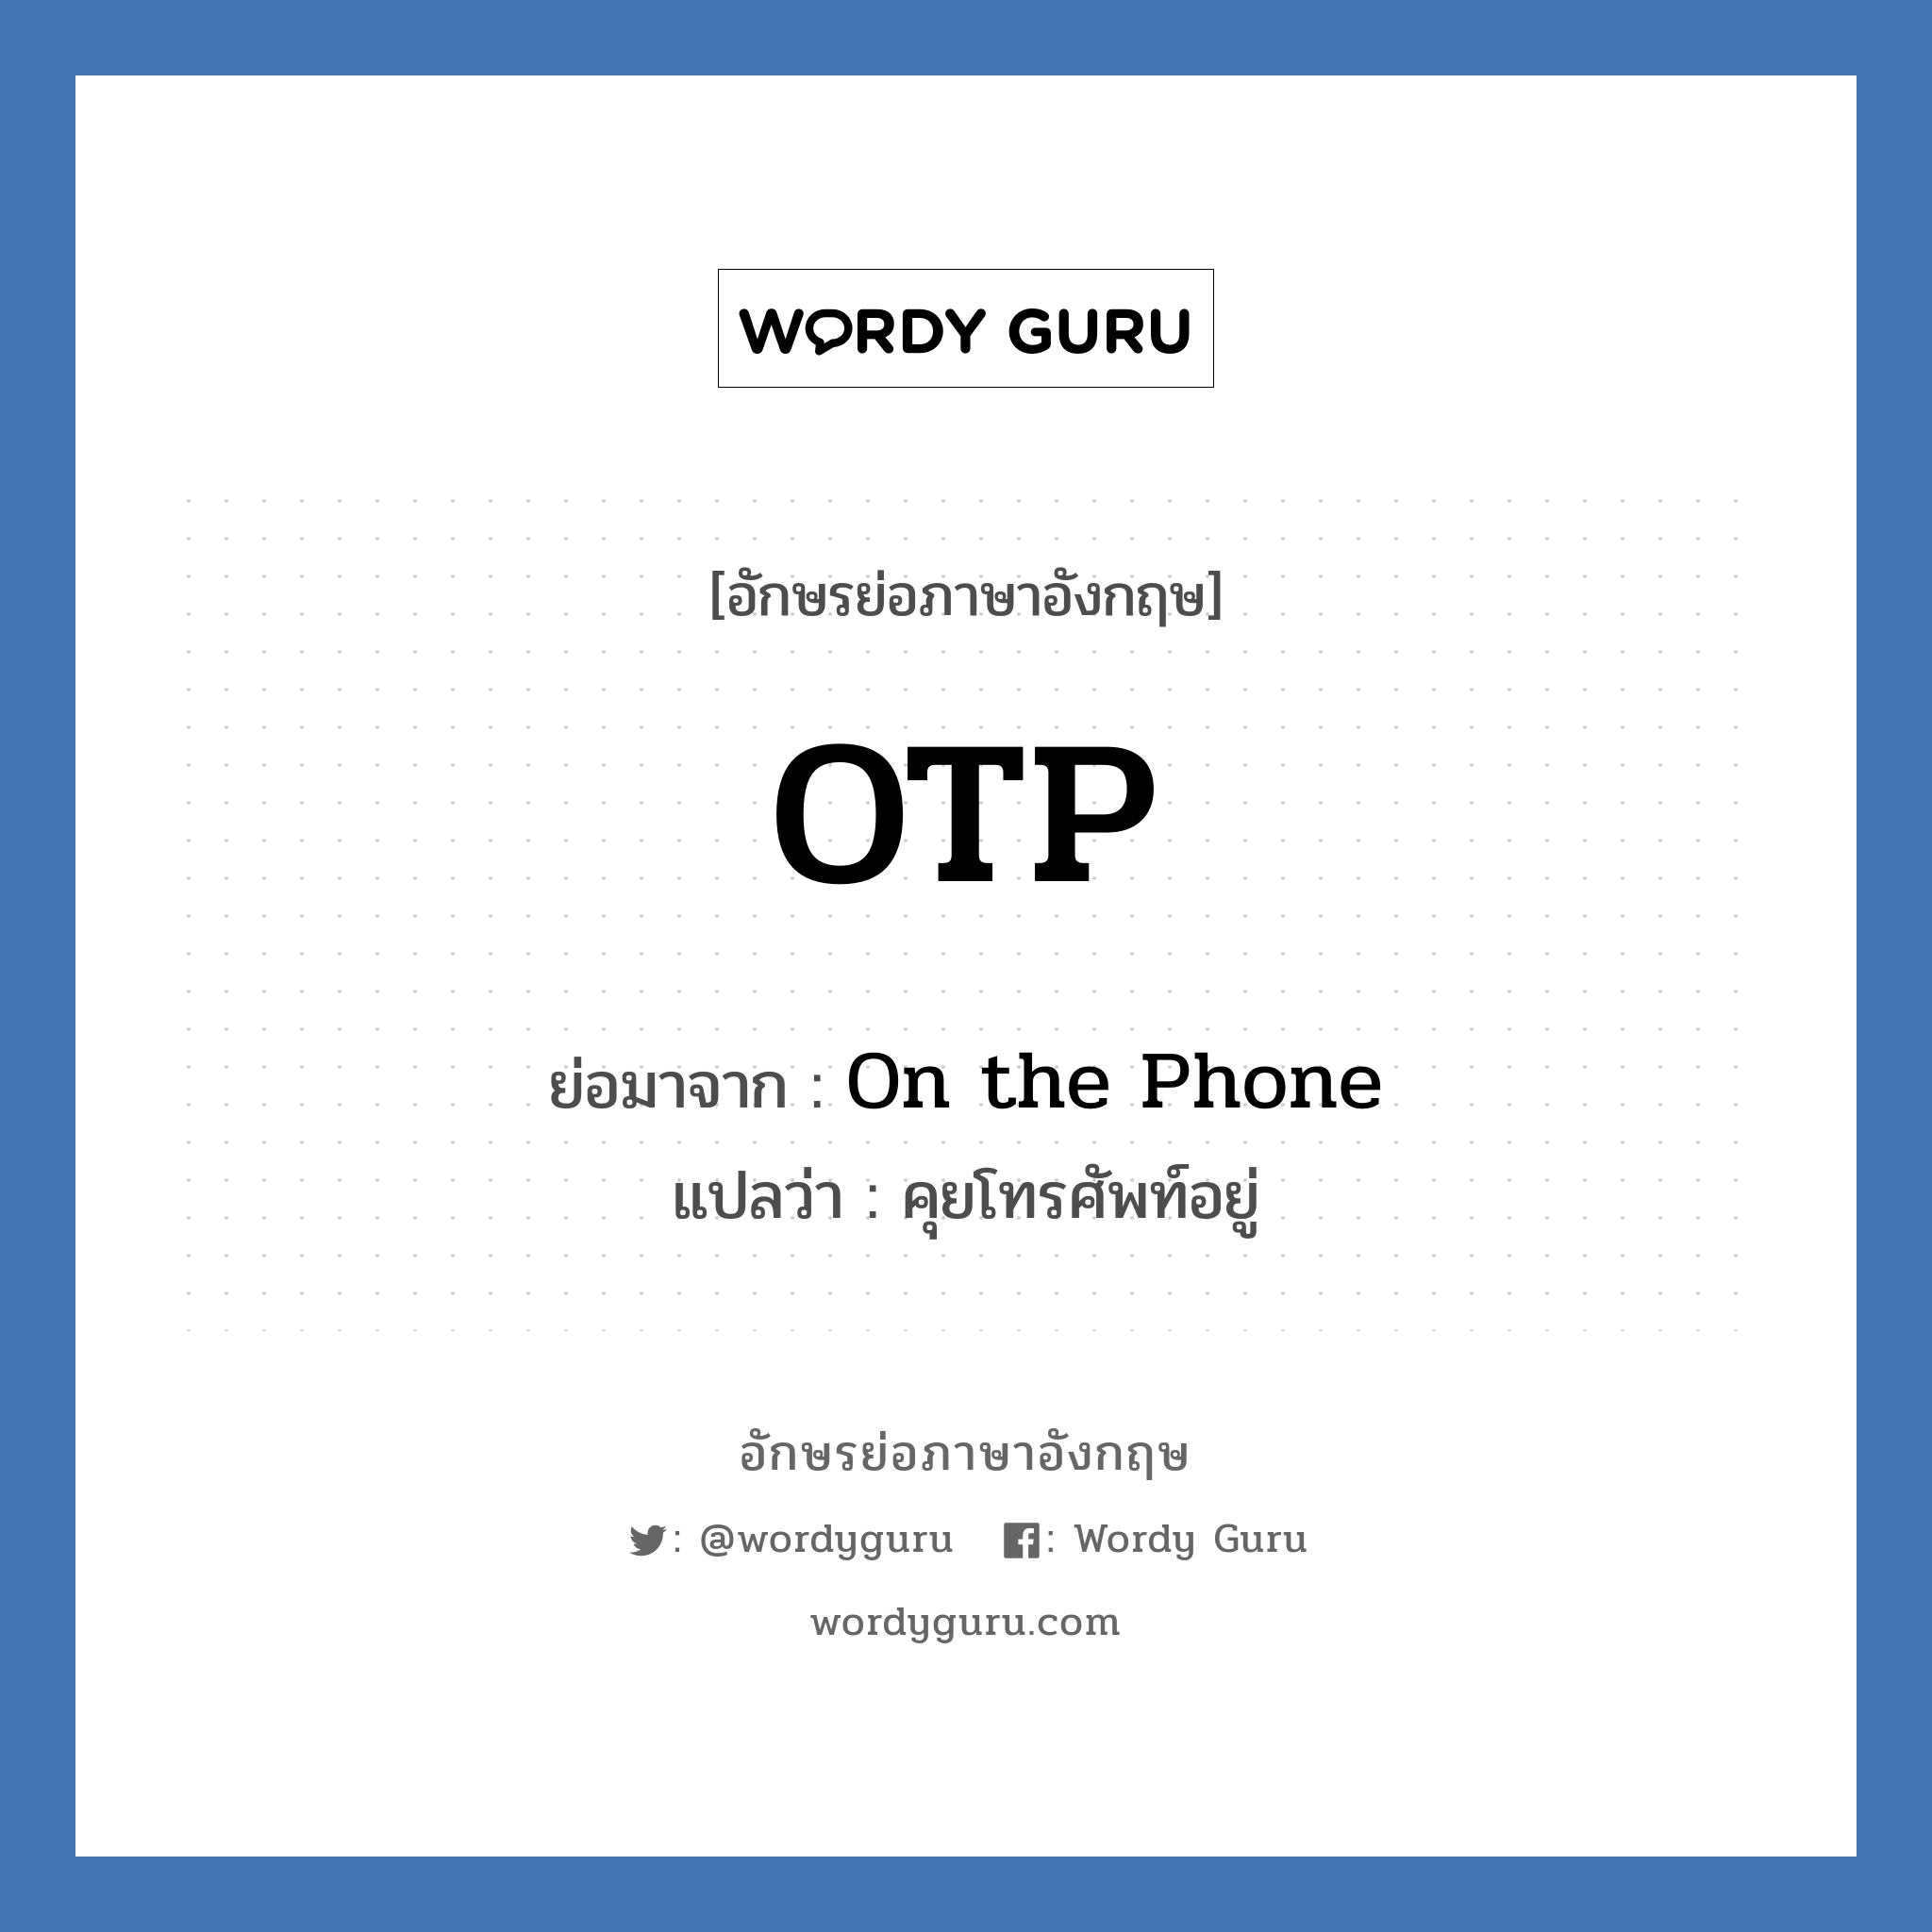 On the Phone คำย่อคือ? แปลว่า?, อักษรย่อภาษาอังกฤษ On the Phone ย่อมาจาก OTP แปลว่า คุยโทรศัพท์อยู่